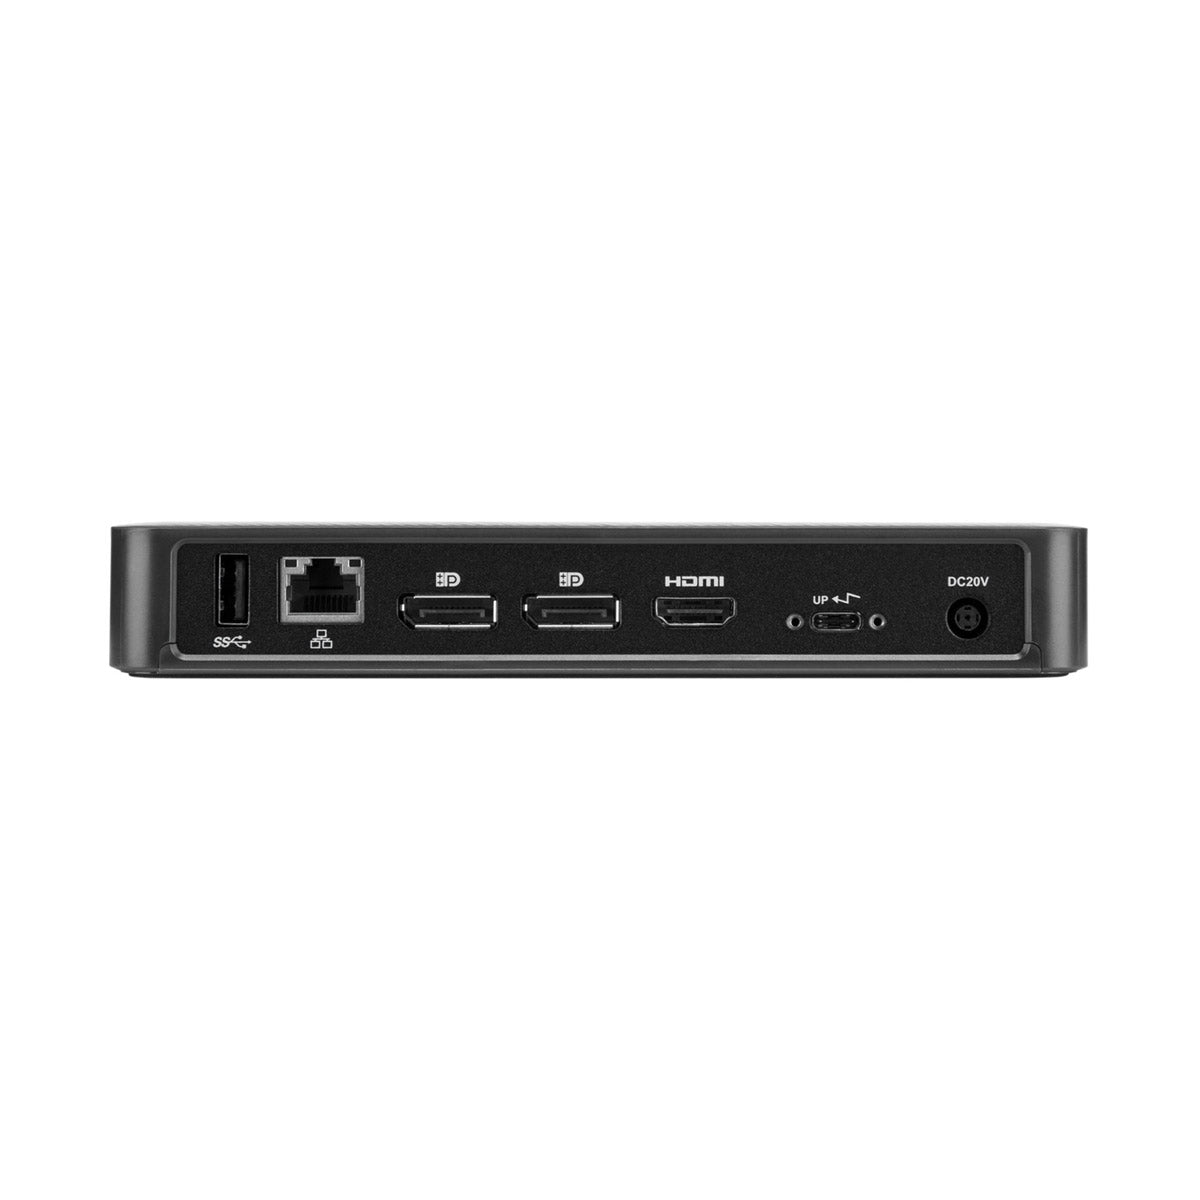 Targus DOCK430 USB-C Docking Station 擴充基座